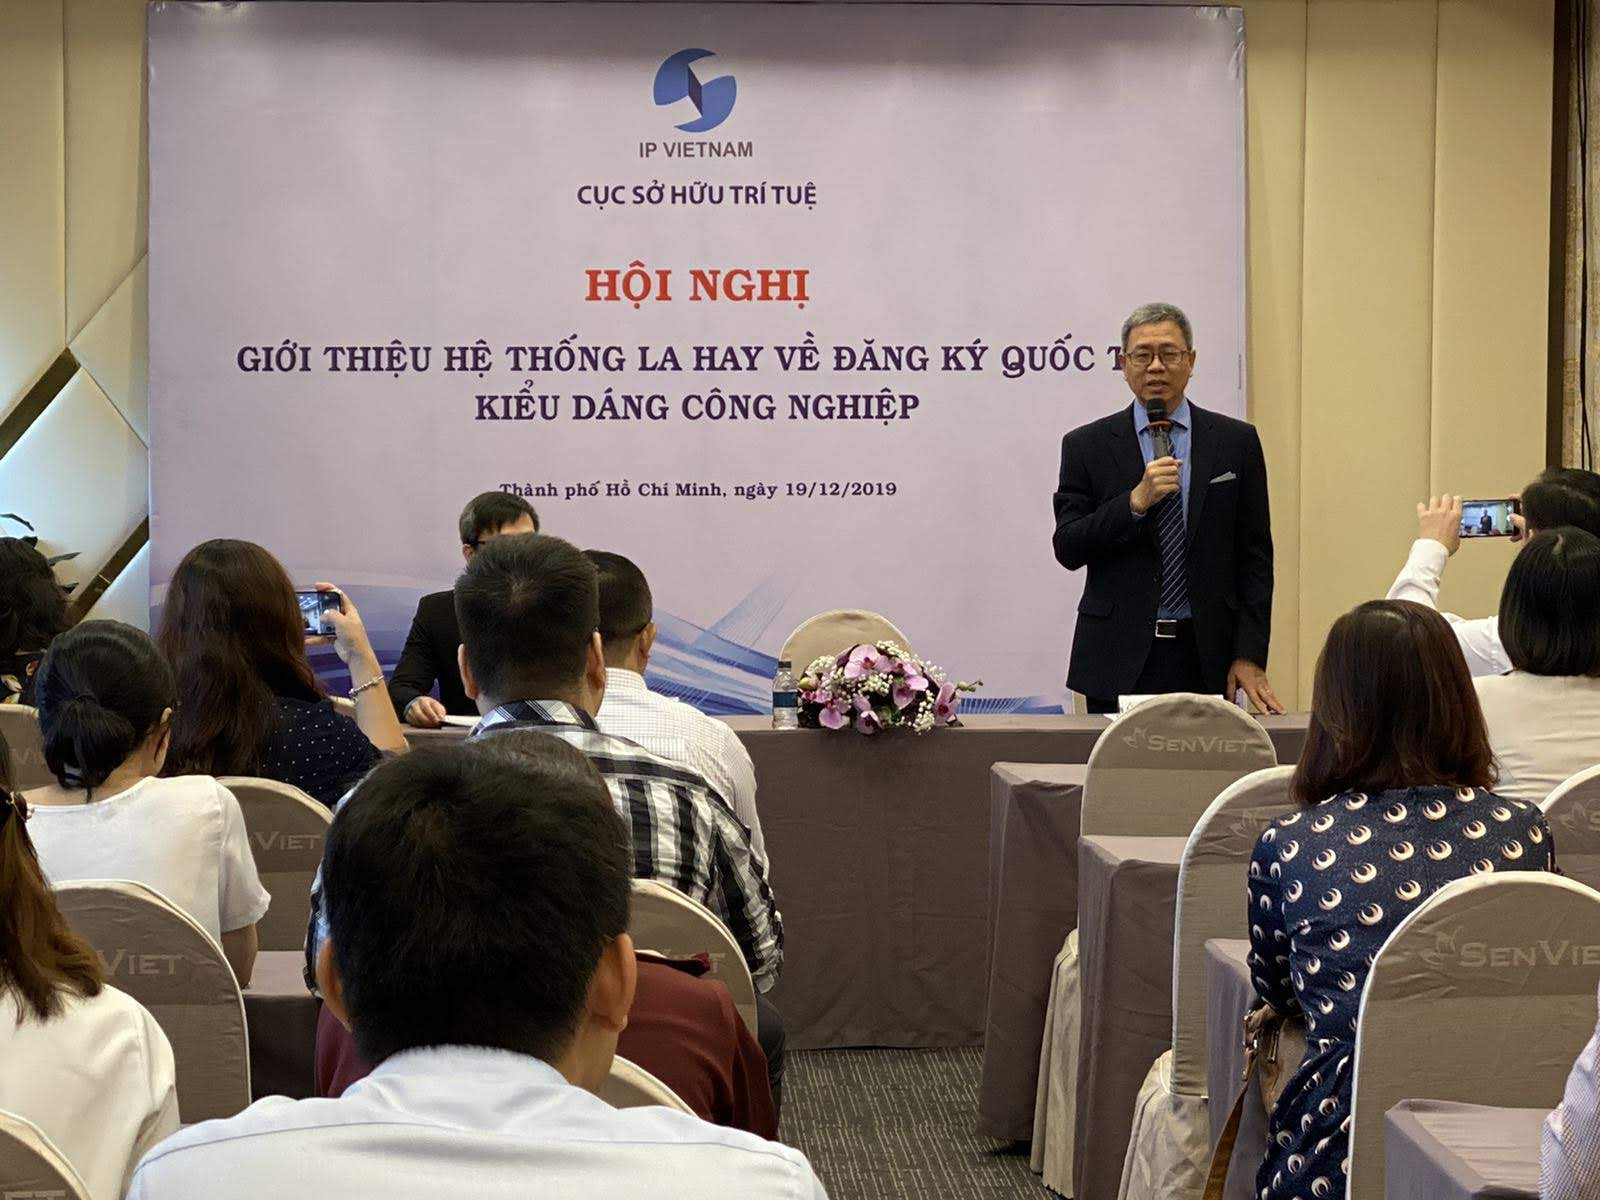 Hội nghị Giới thiệu Hệ thống La Hay về đăng ký quốc tế Kiểu dáng công nghiệp tại Hà Nội và thành phố Hồ Chí Minh